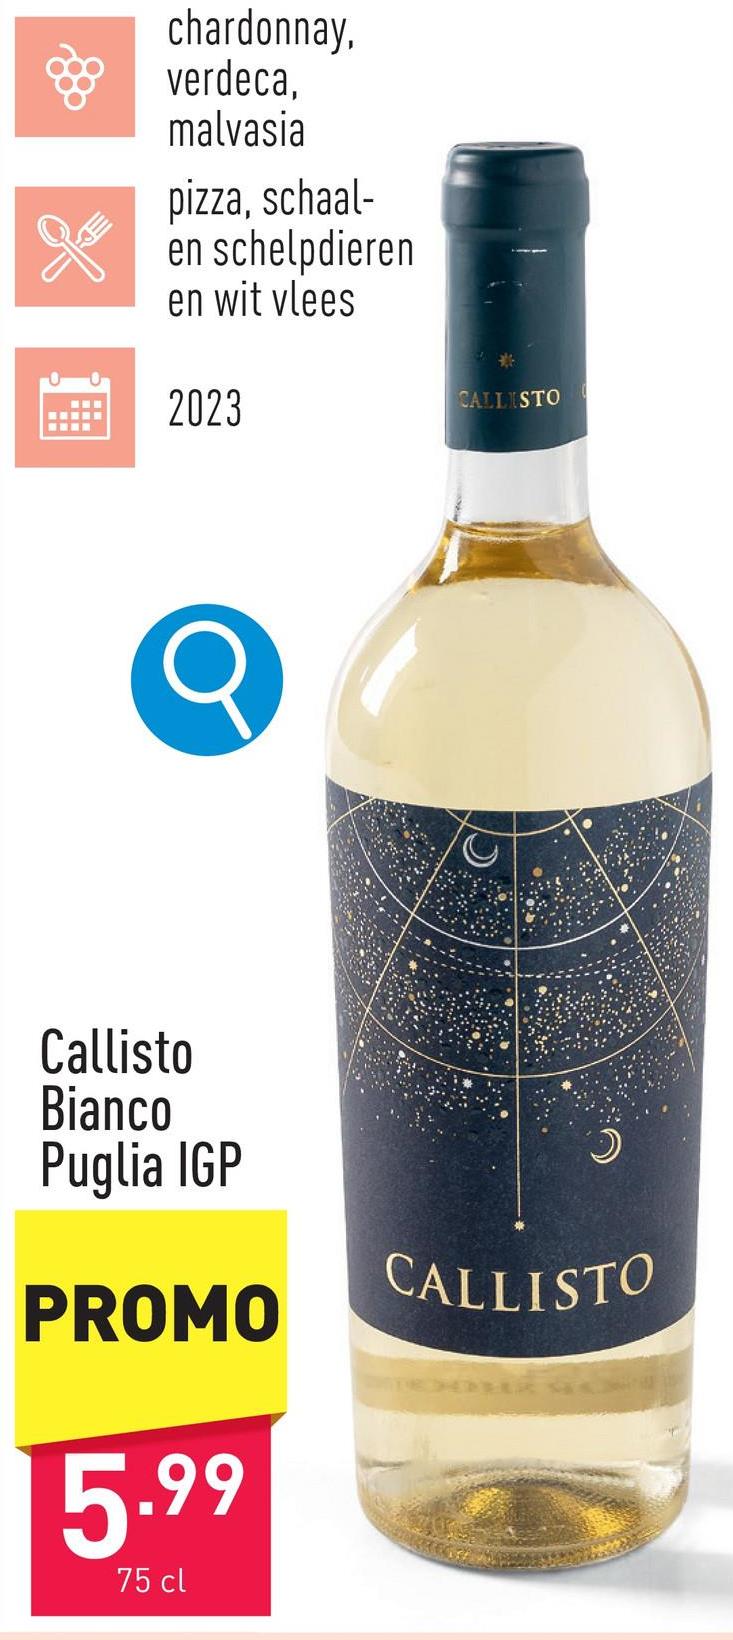 Callisto Bianco Puglia IGP frisse, fruitige wijn met aroma's van wit steenfruit zoals nectarine en meloen, sterke afdronkdruivensoort: chardonnay, verdeca, malvasiaaanbeveling: pizza, schaal- en schelpdieren en wit vleesjaargang: 2023